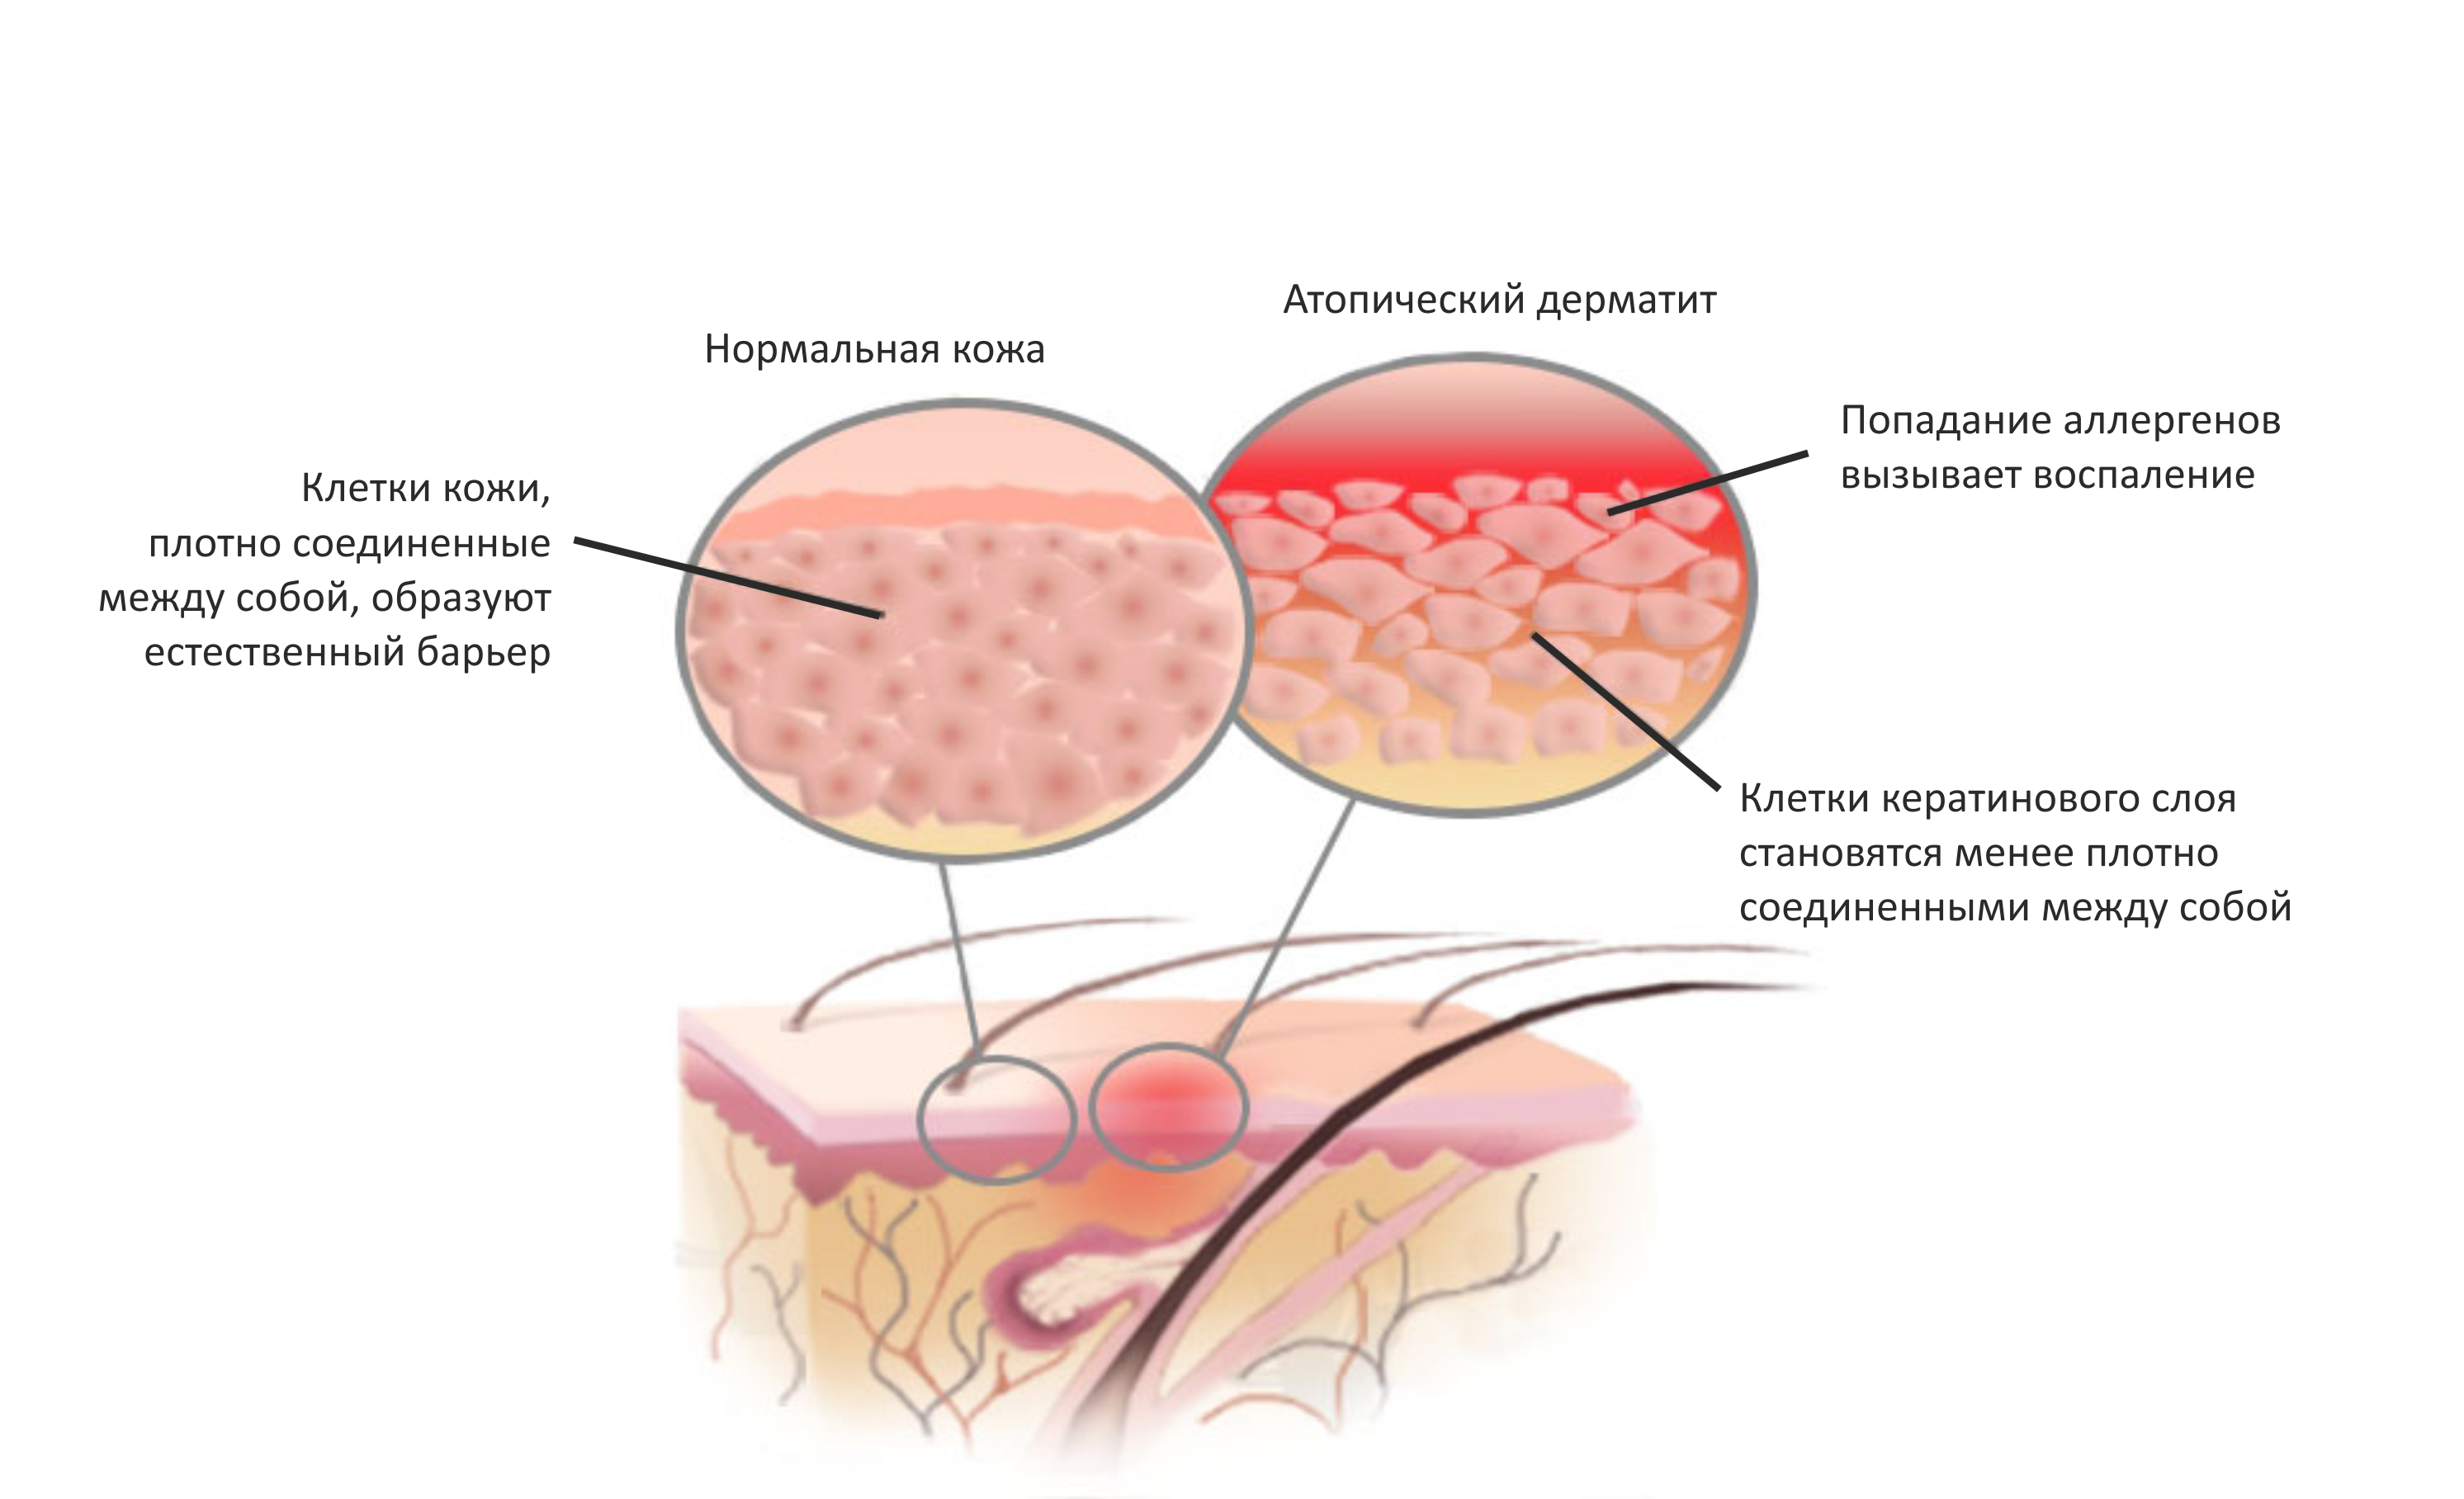 Характерными особенностями атопического дерматита являются сильный зуд и клинический полиморфизм, определяющие разнообразие клинических форм заболевания